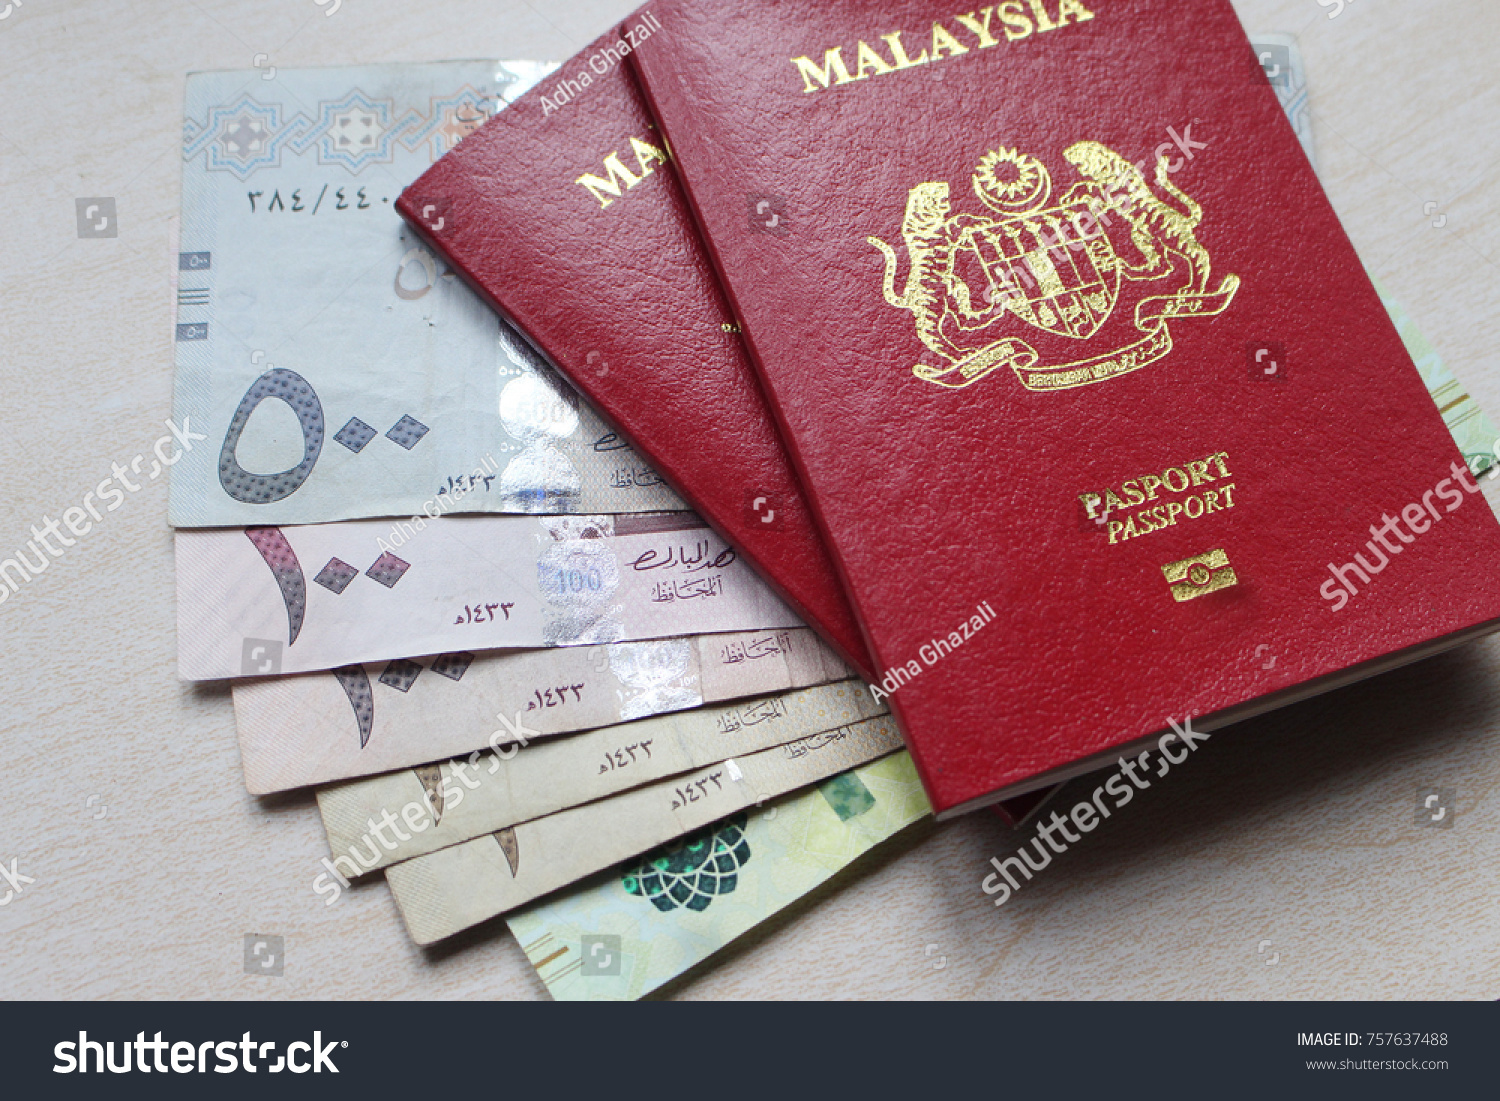 Passport malaysia gambar Passport Photo